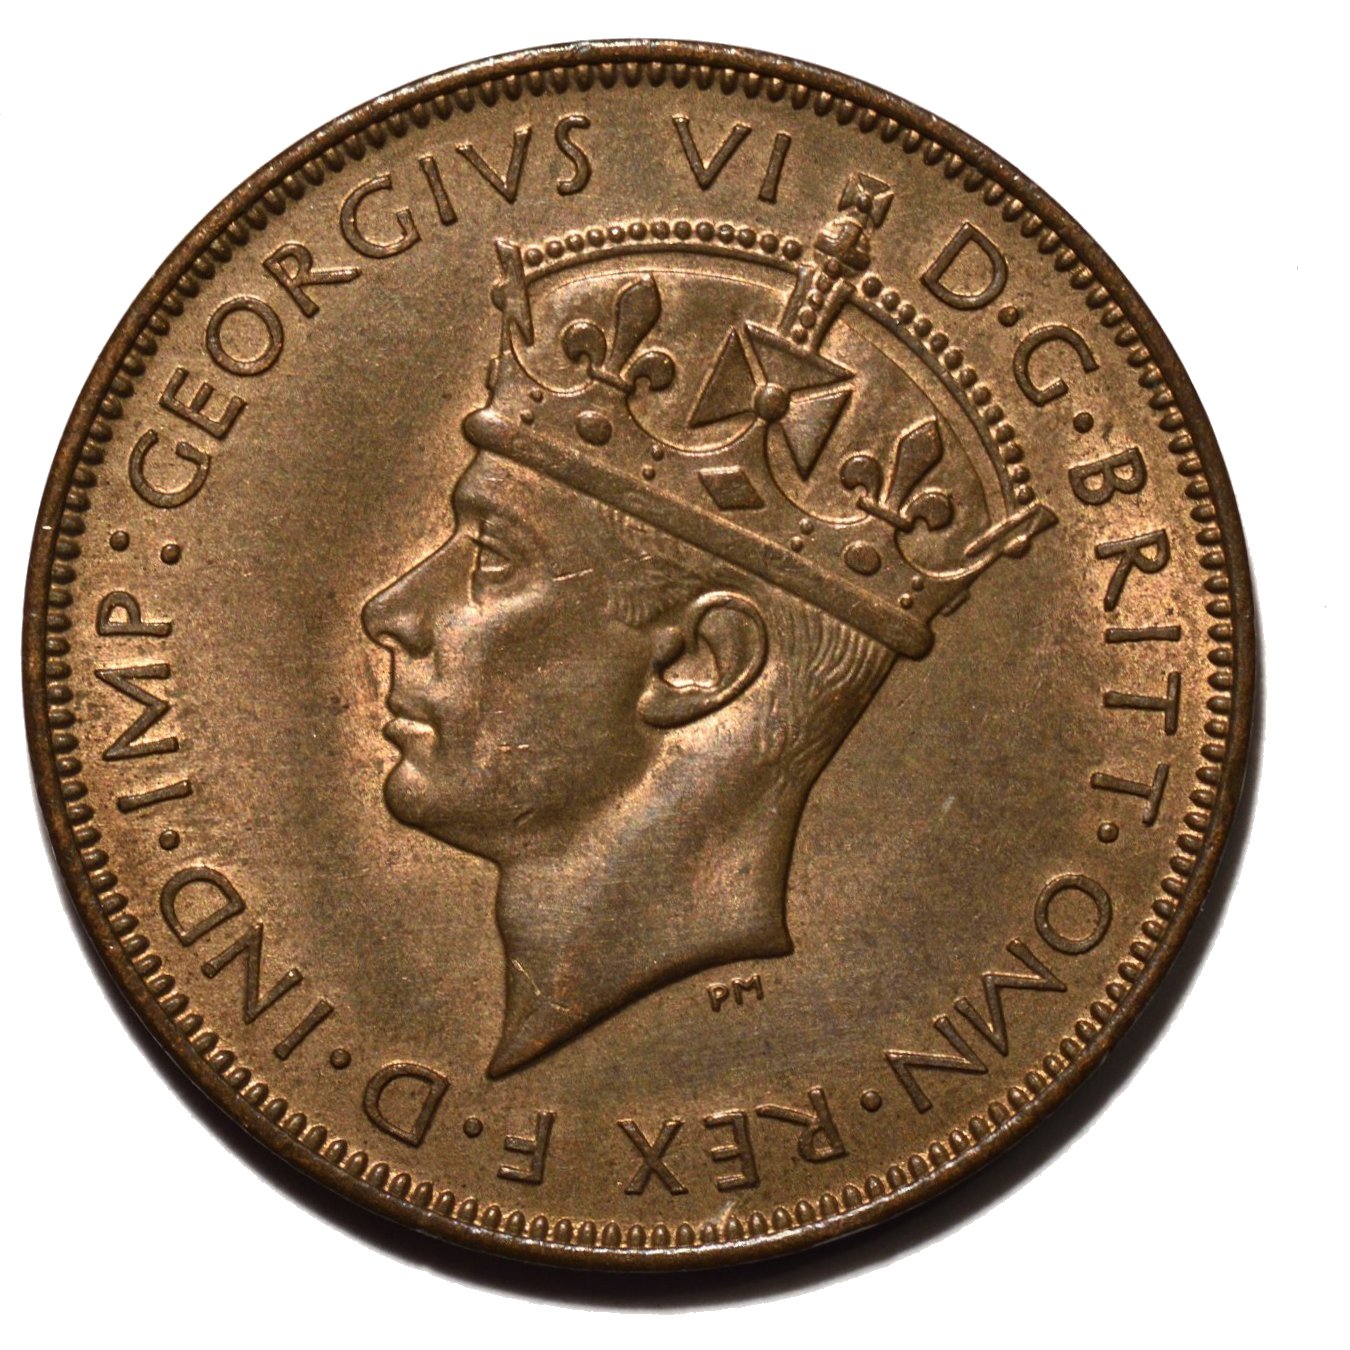 1947 half penny obverse